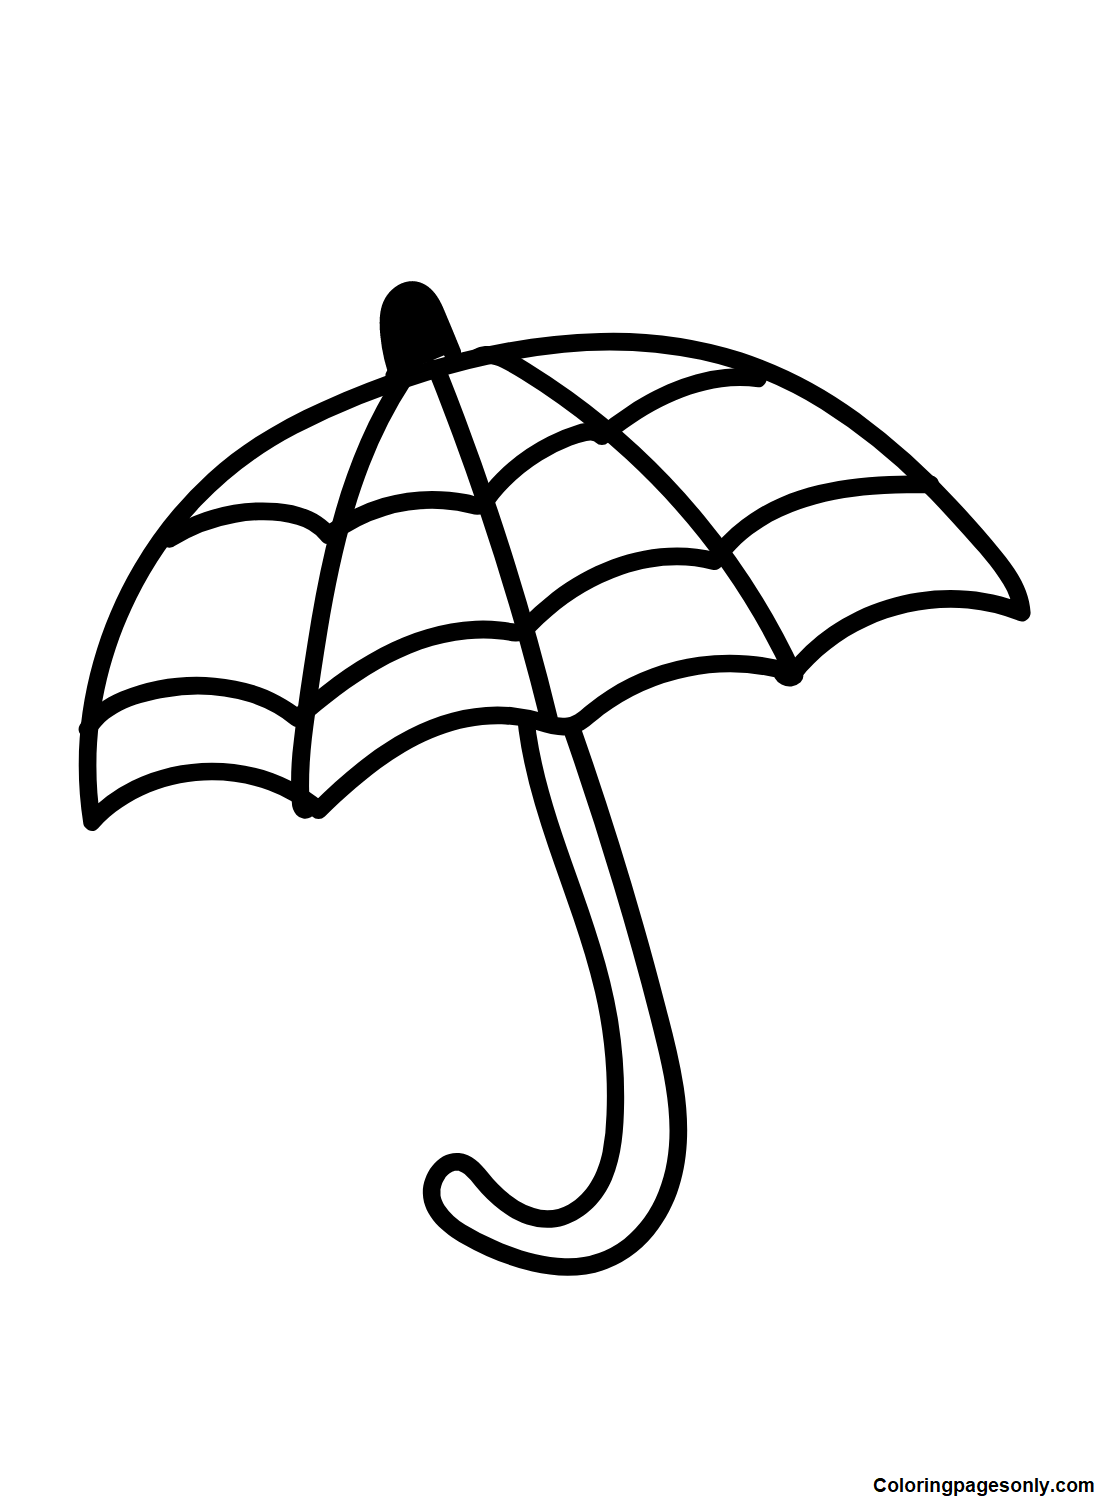 Imágenes gratuitas de paraguas de Umbrella